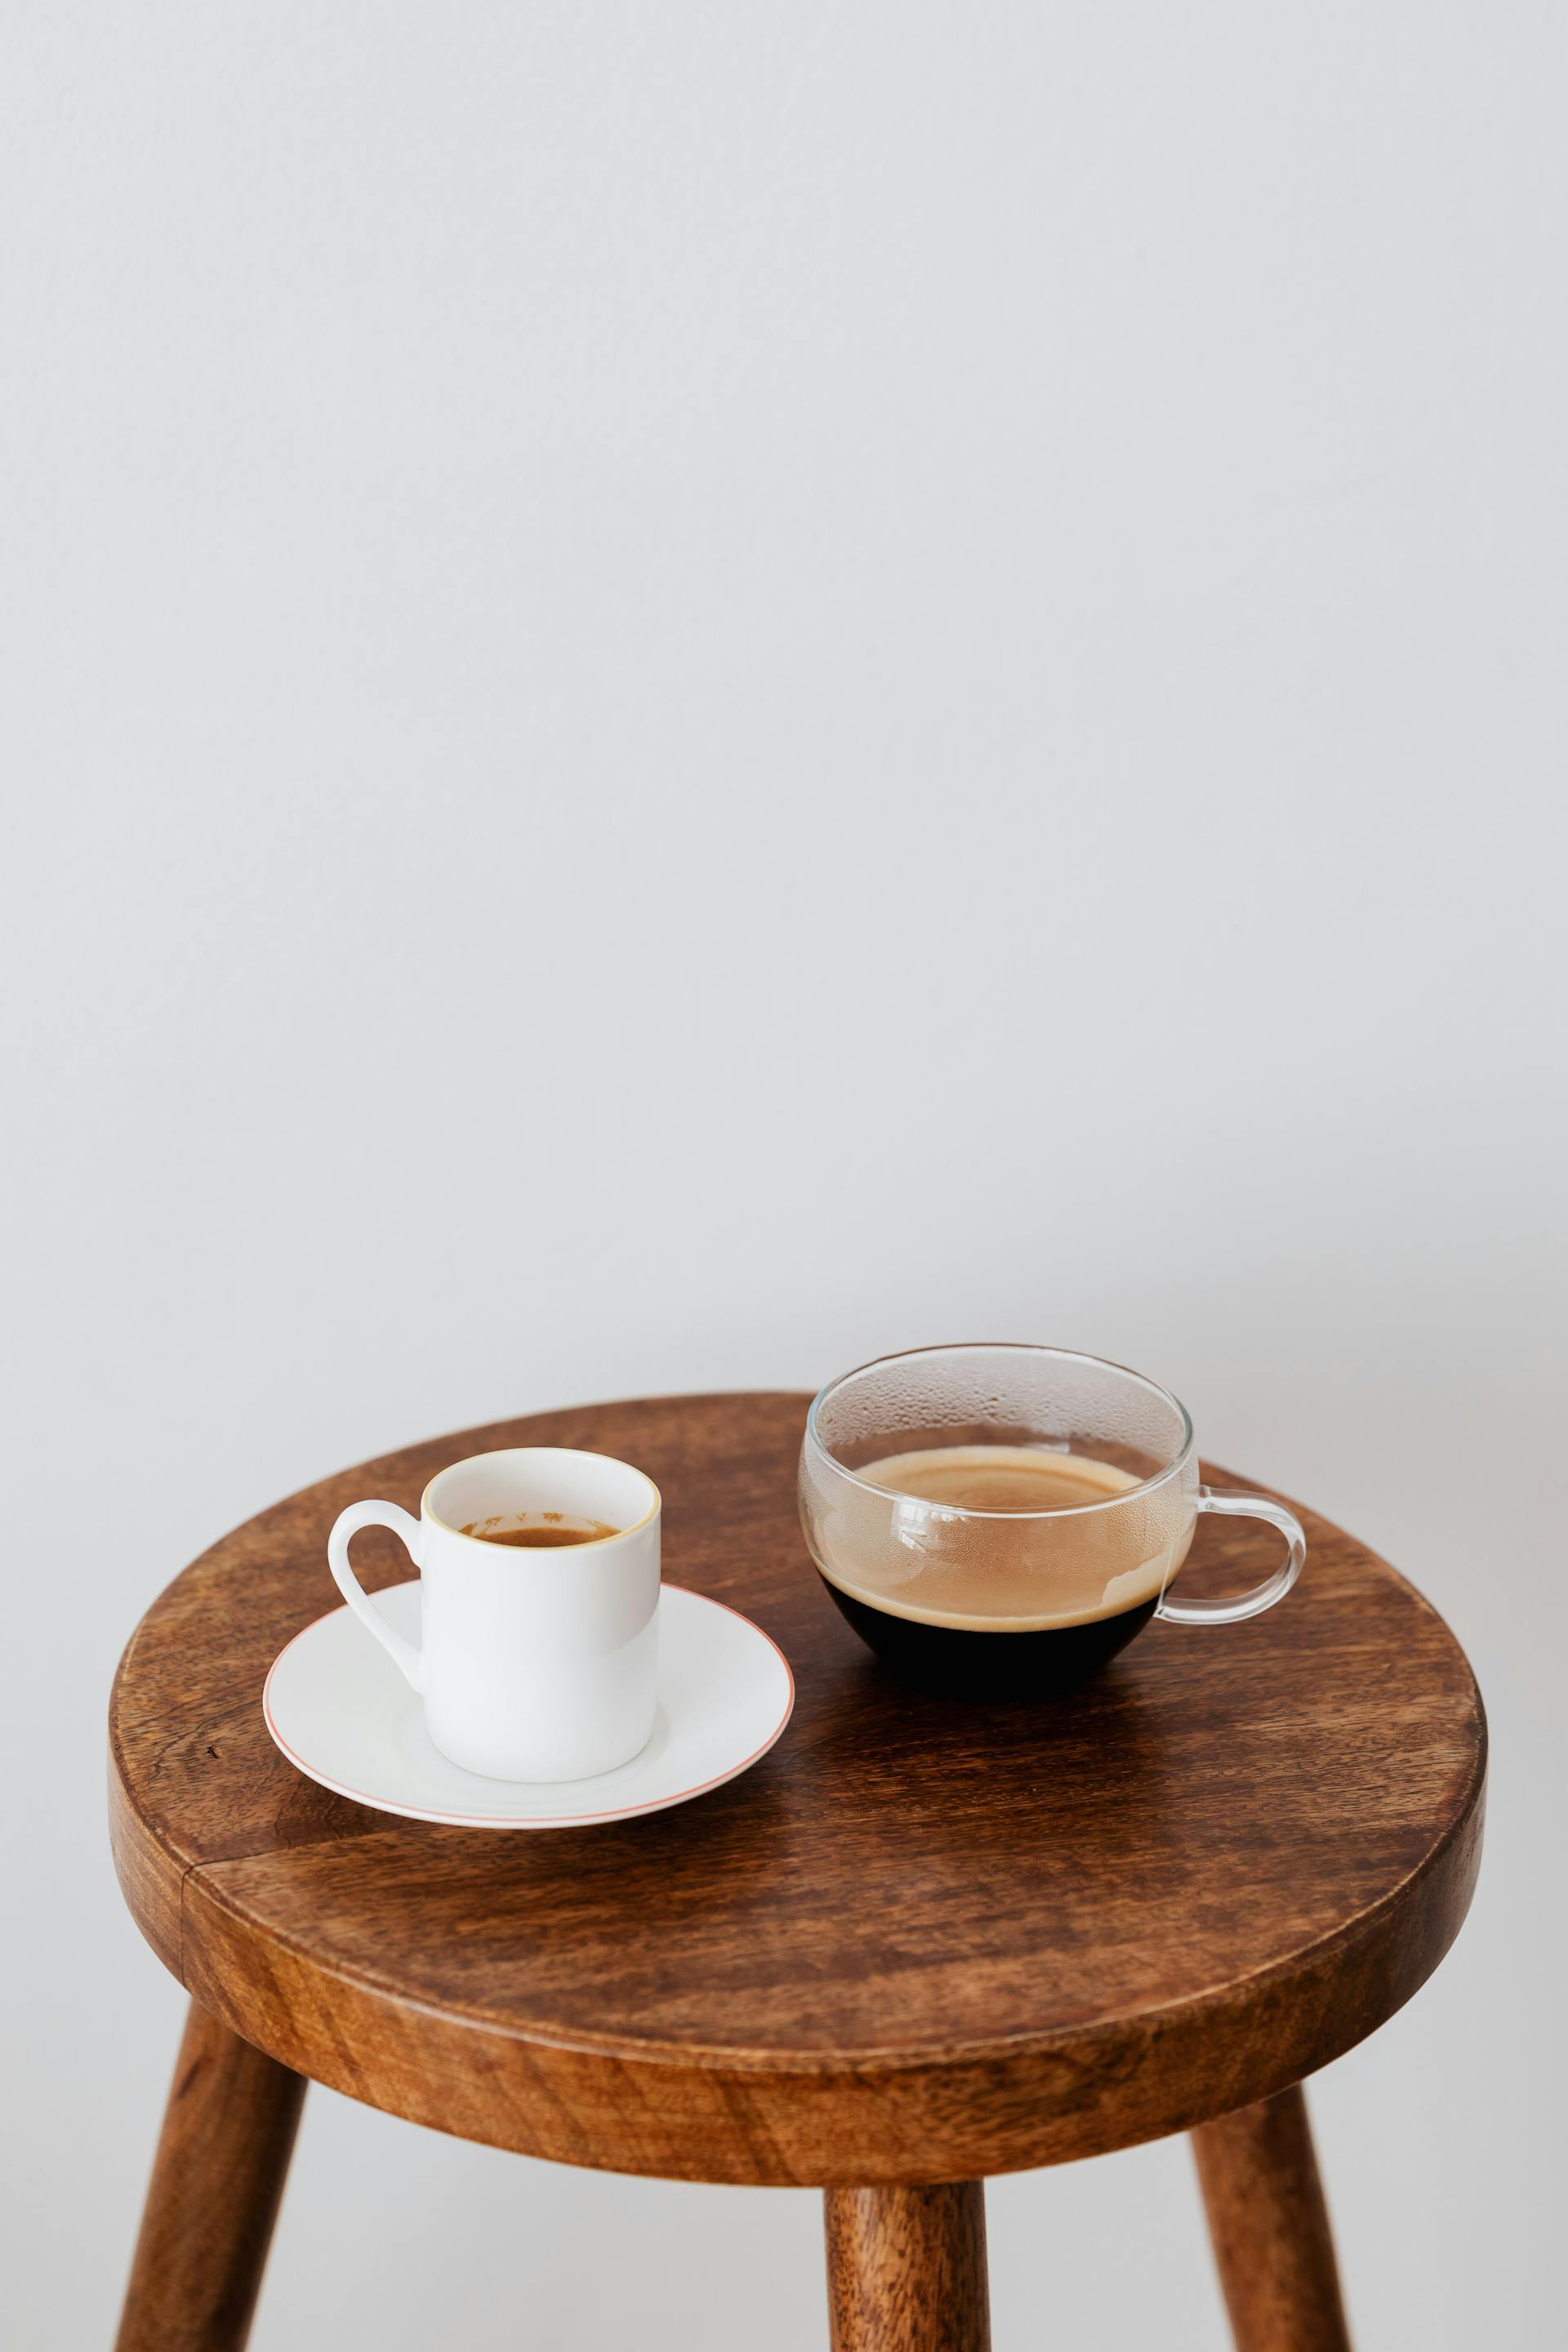 Tazas sobre una mesa | Foto: Pexels